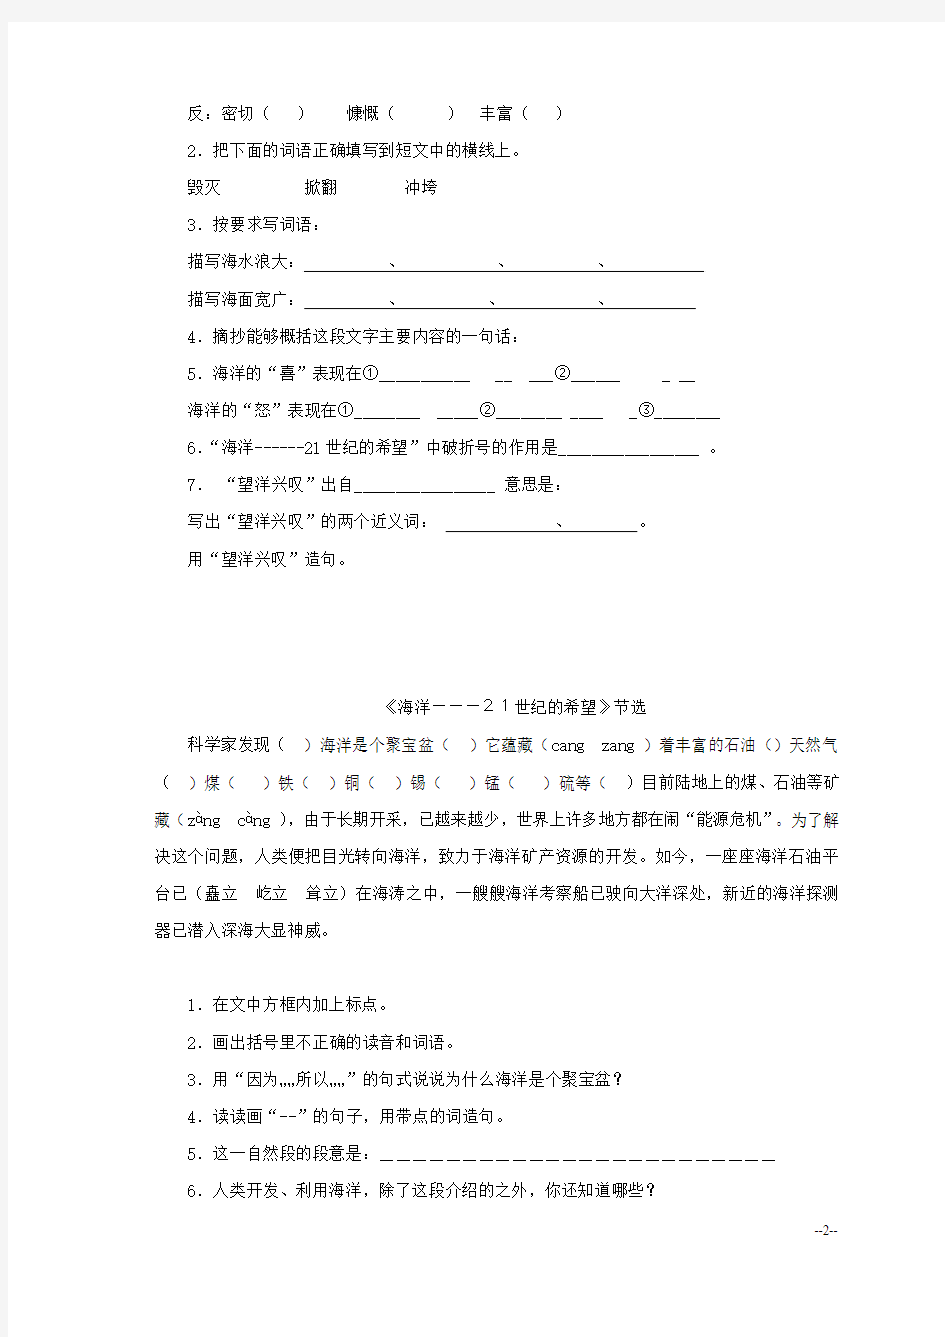 江苏省扬州市小学六年级语文 阅读专项模拟试题(四)